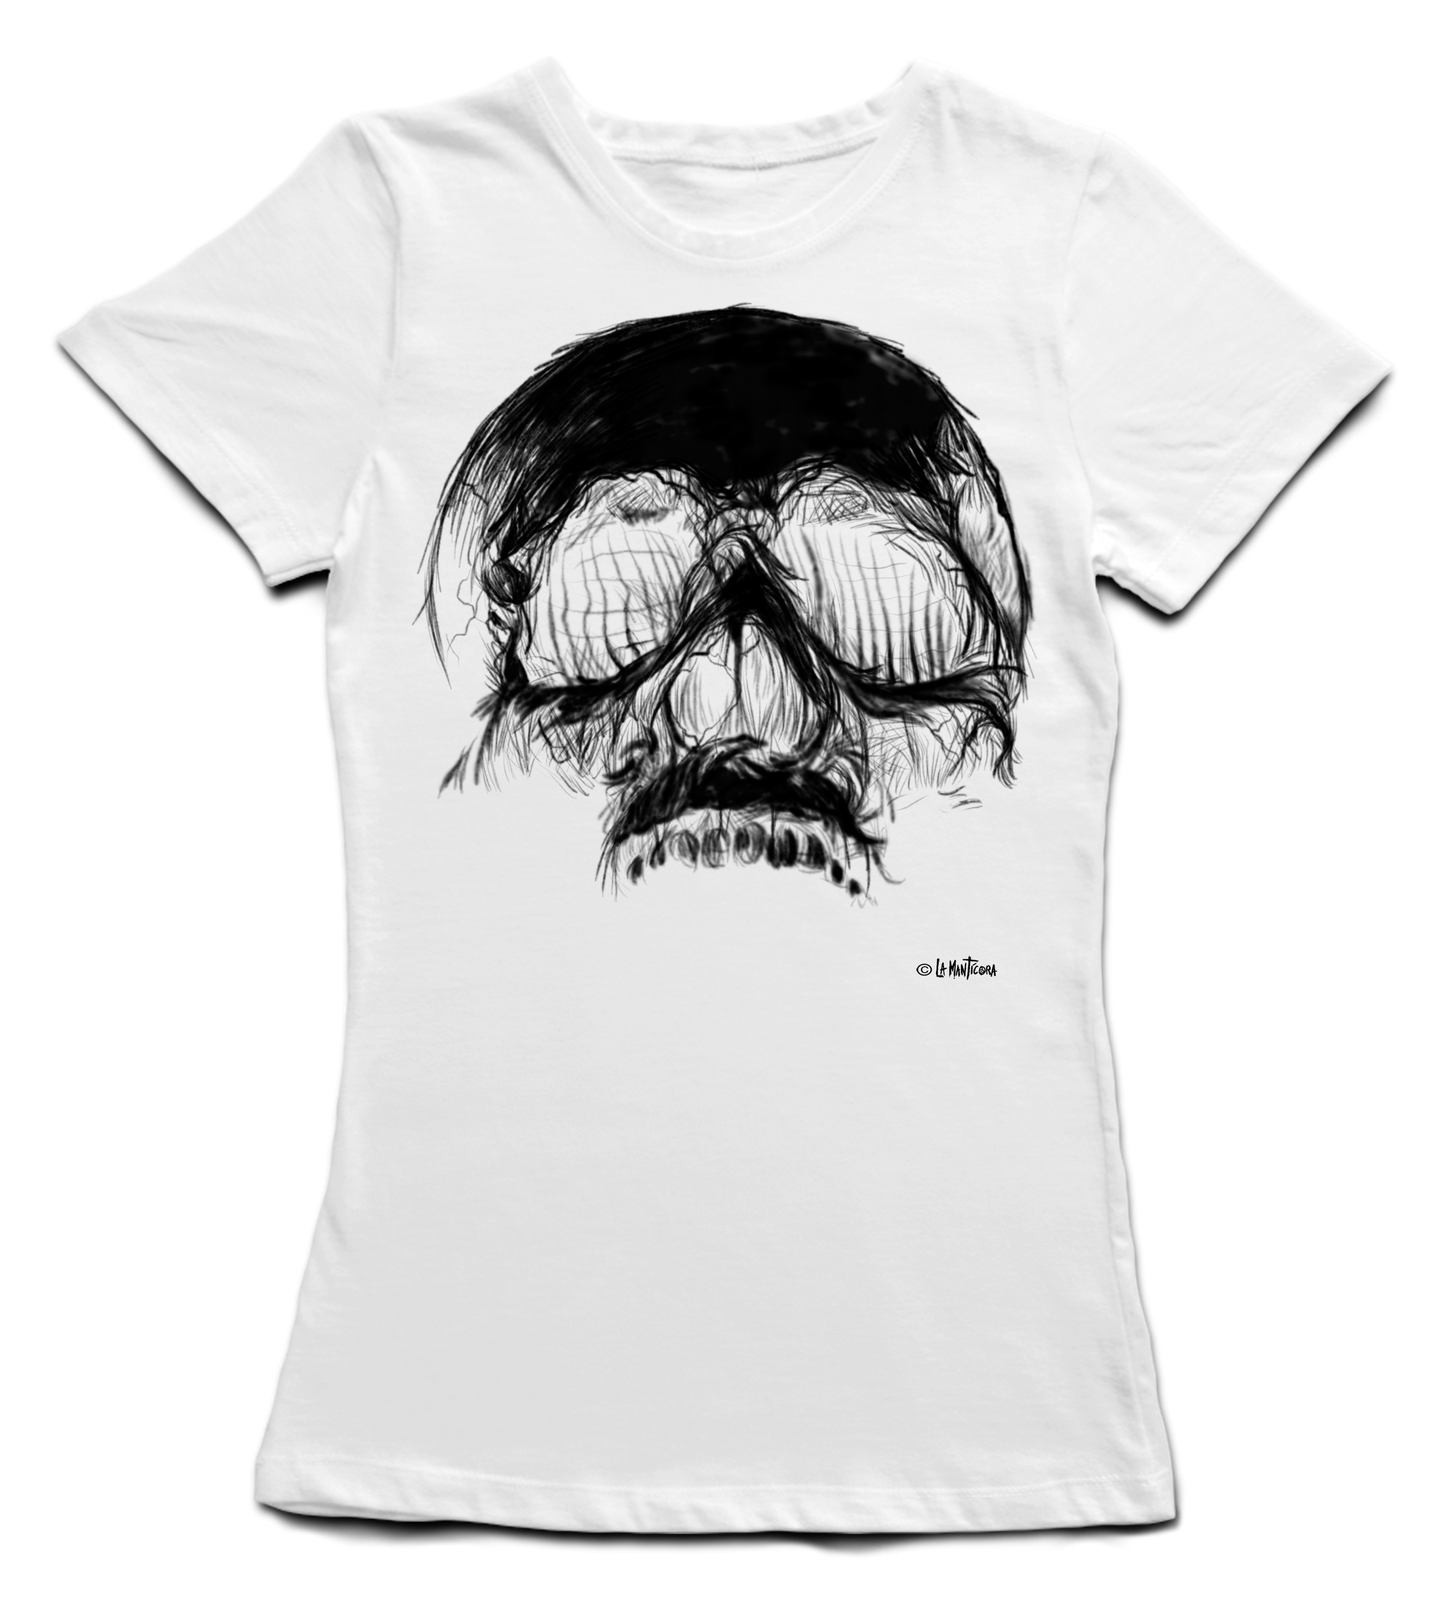 Camiseta Chica Skull Free en blanco